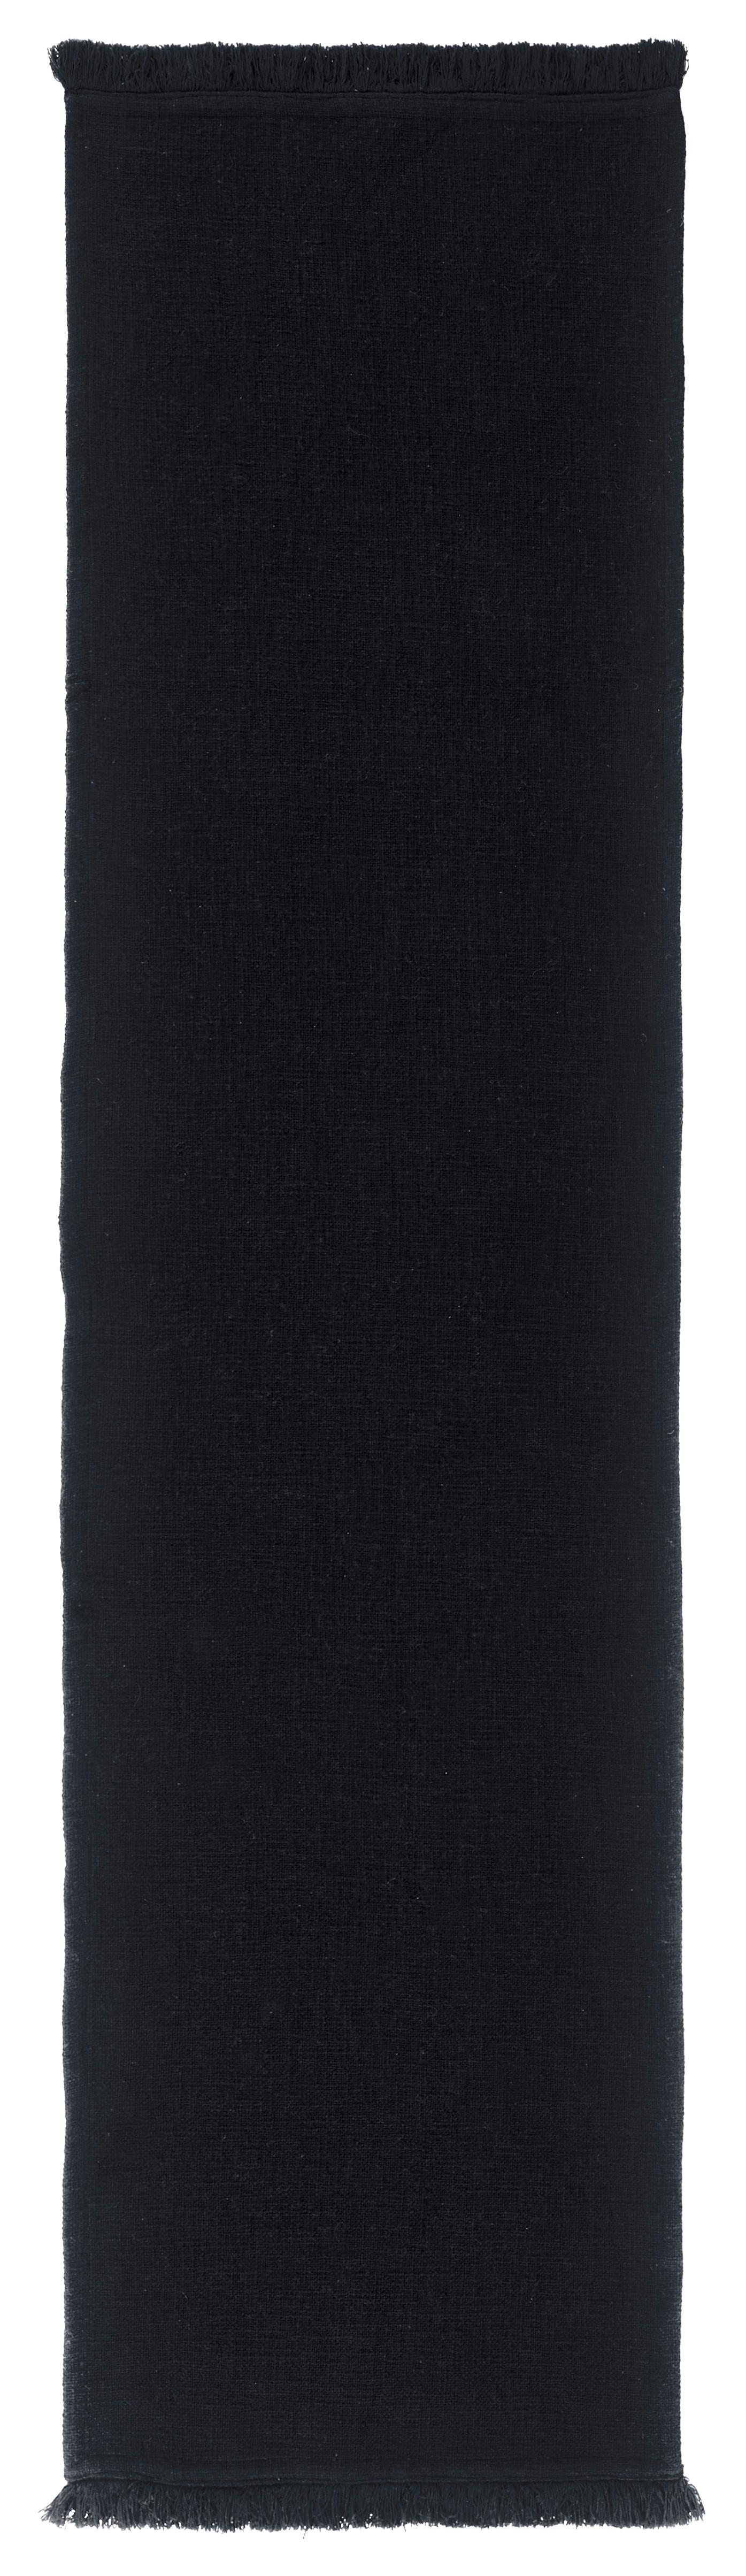 Nadprt Pablo - črna, Moderno, tekstil (45/170cm) - Premium Living